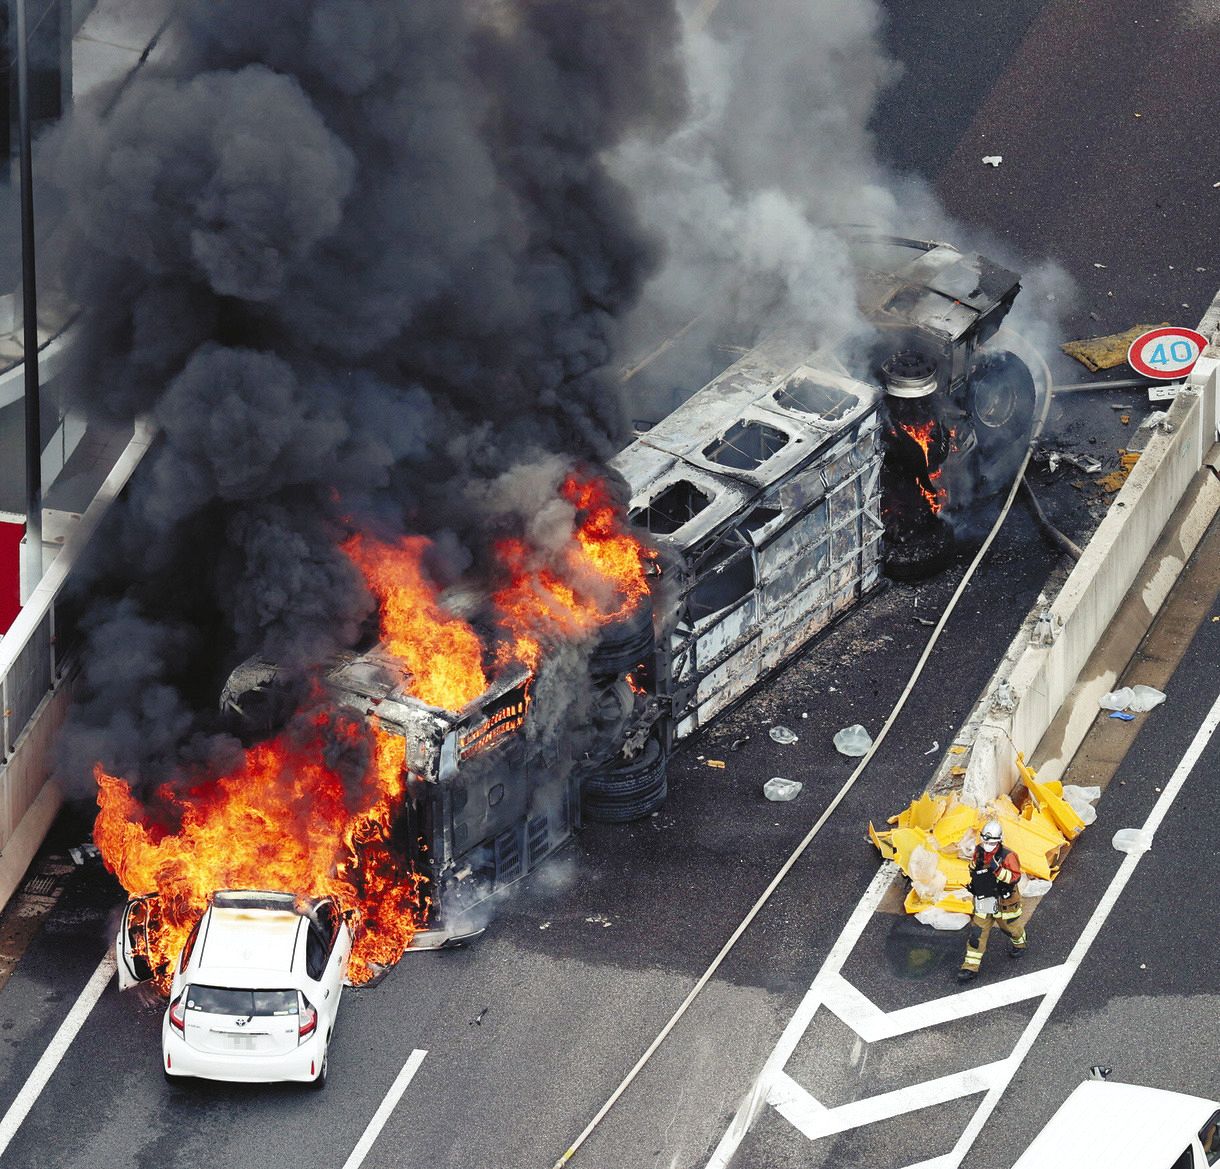 名古屋高速バス事故 衝突の後続車運転手が証言 事故前運転には違和感なく出口付近で 急な方向転換 中日スポーツ 東京中日スポーツ